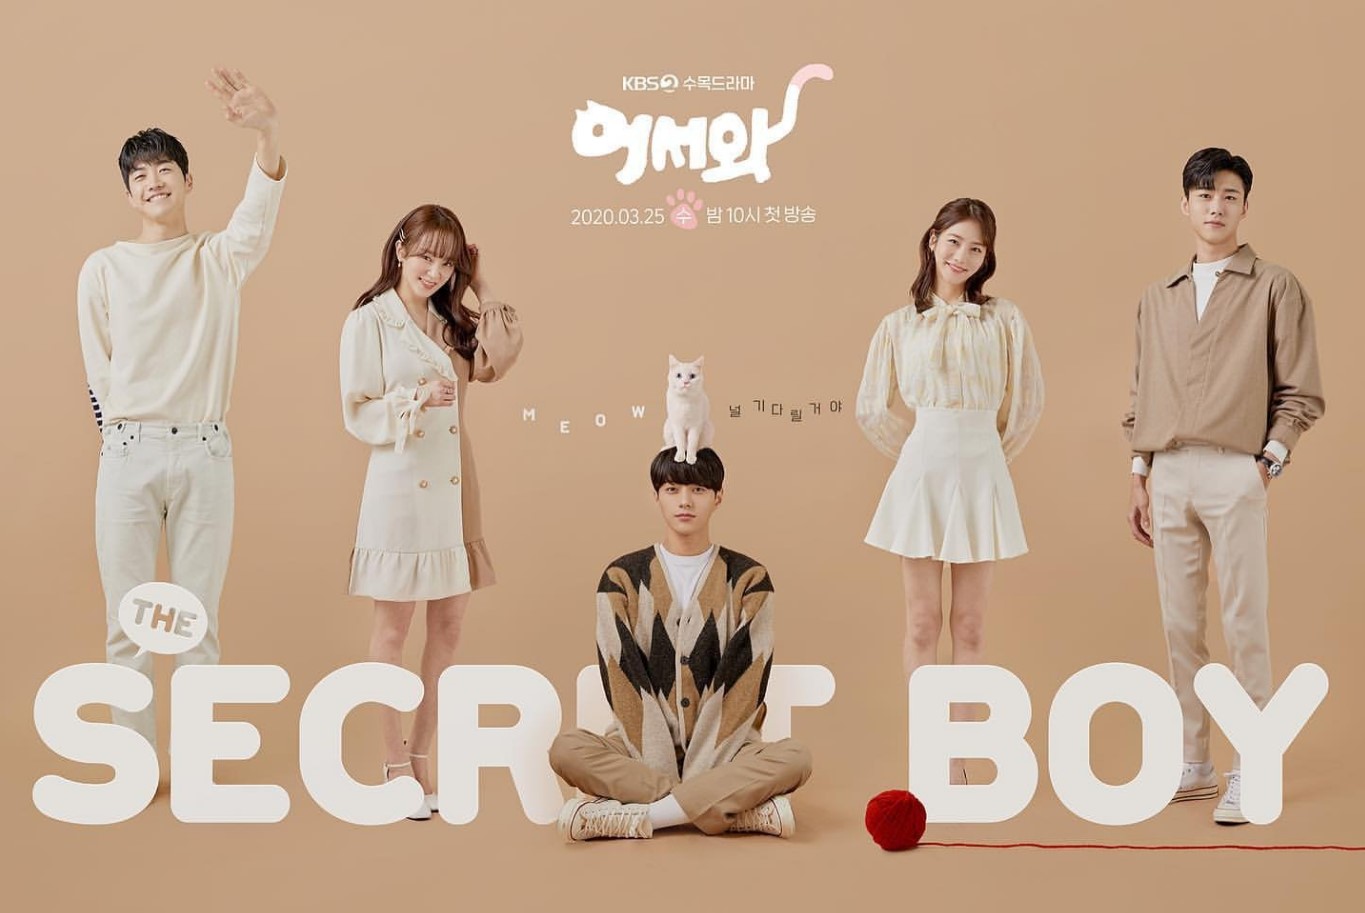 Sinopsis dan Review Drama Korea Meow the Secret Boy (2020)